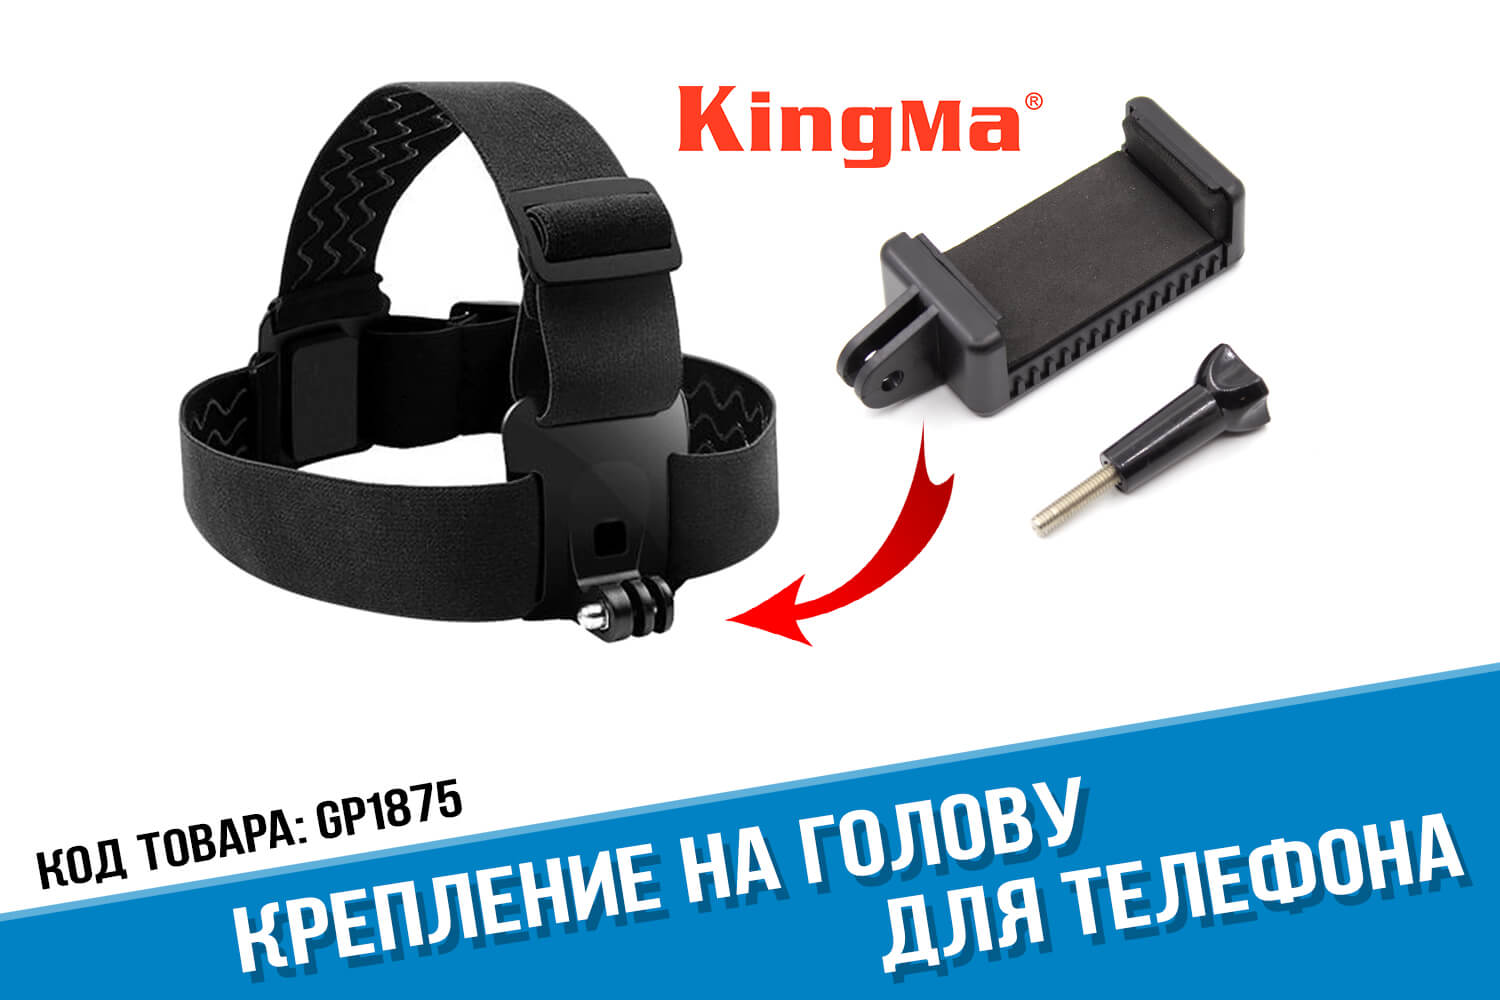 Крепление на голову для телефона фирмы Kingma